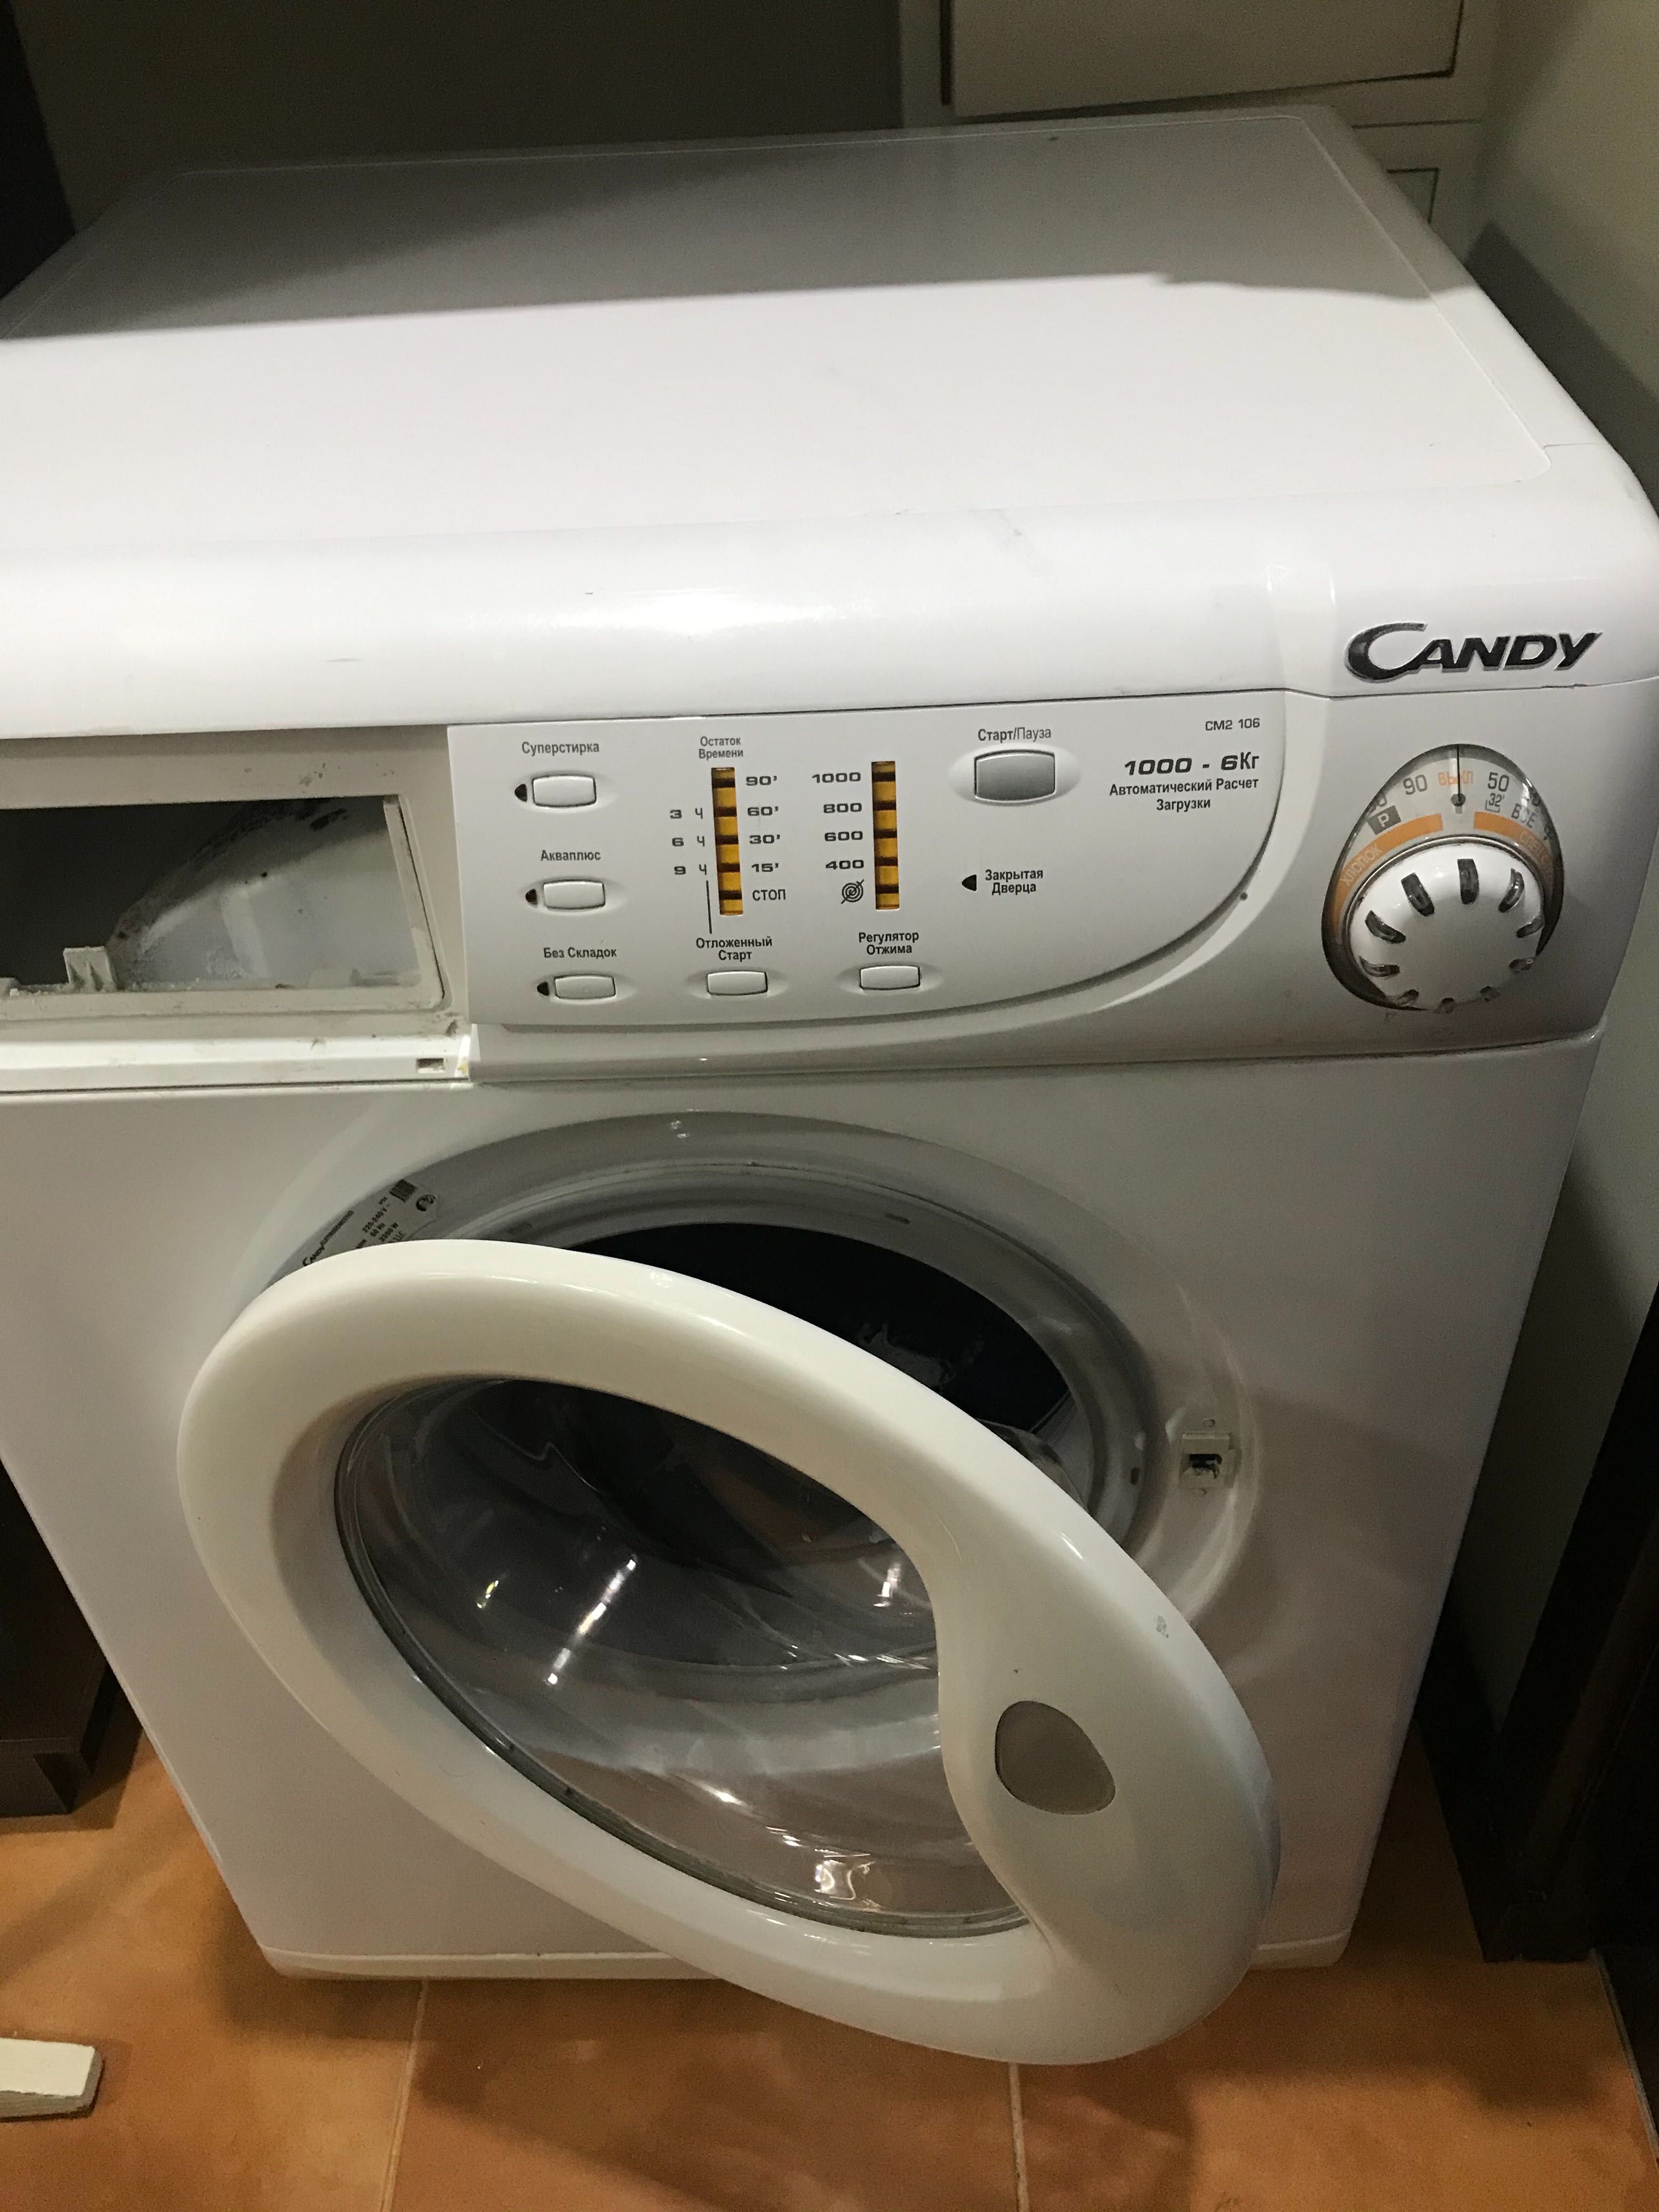 Ремонт стиральных машин / Ремонт посудомоечных машин